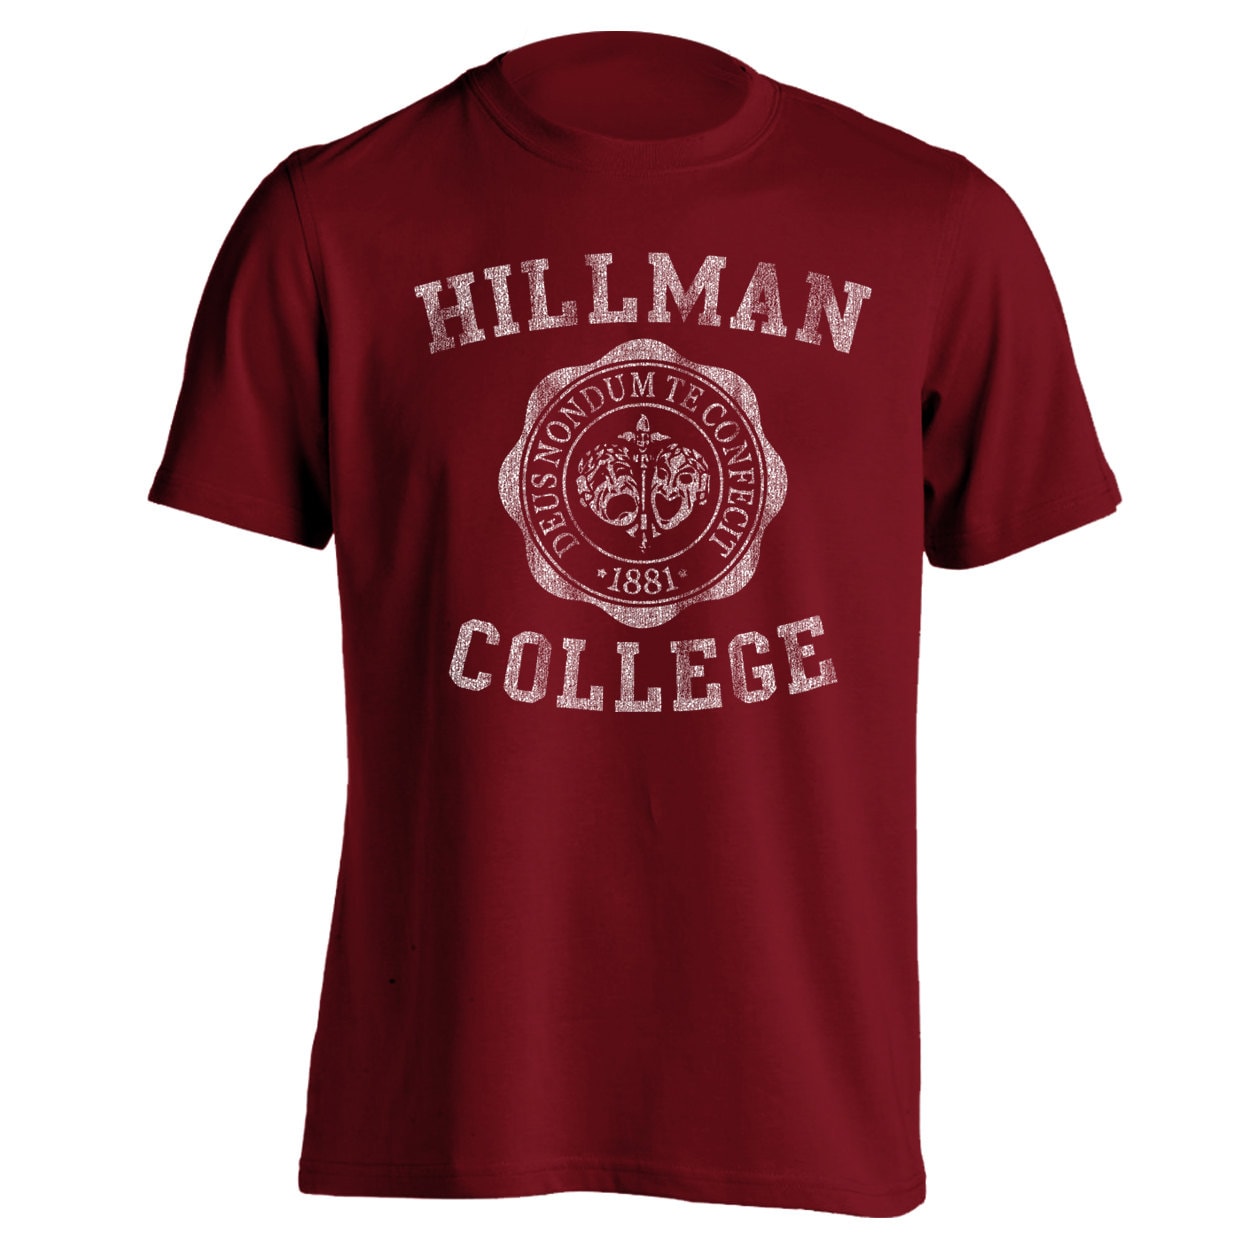 Hillman College Emblem Men's T-Shirt DT0598 by LaughWear on Etsy